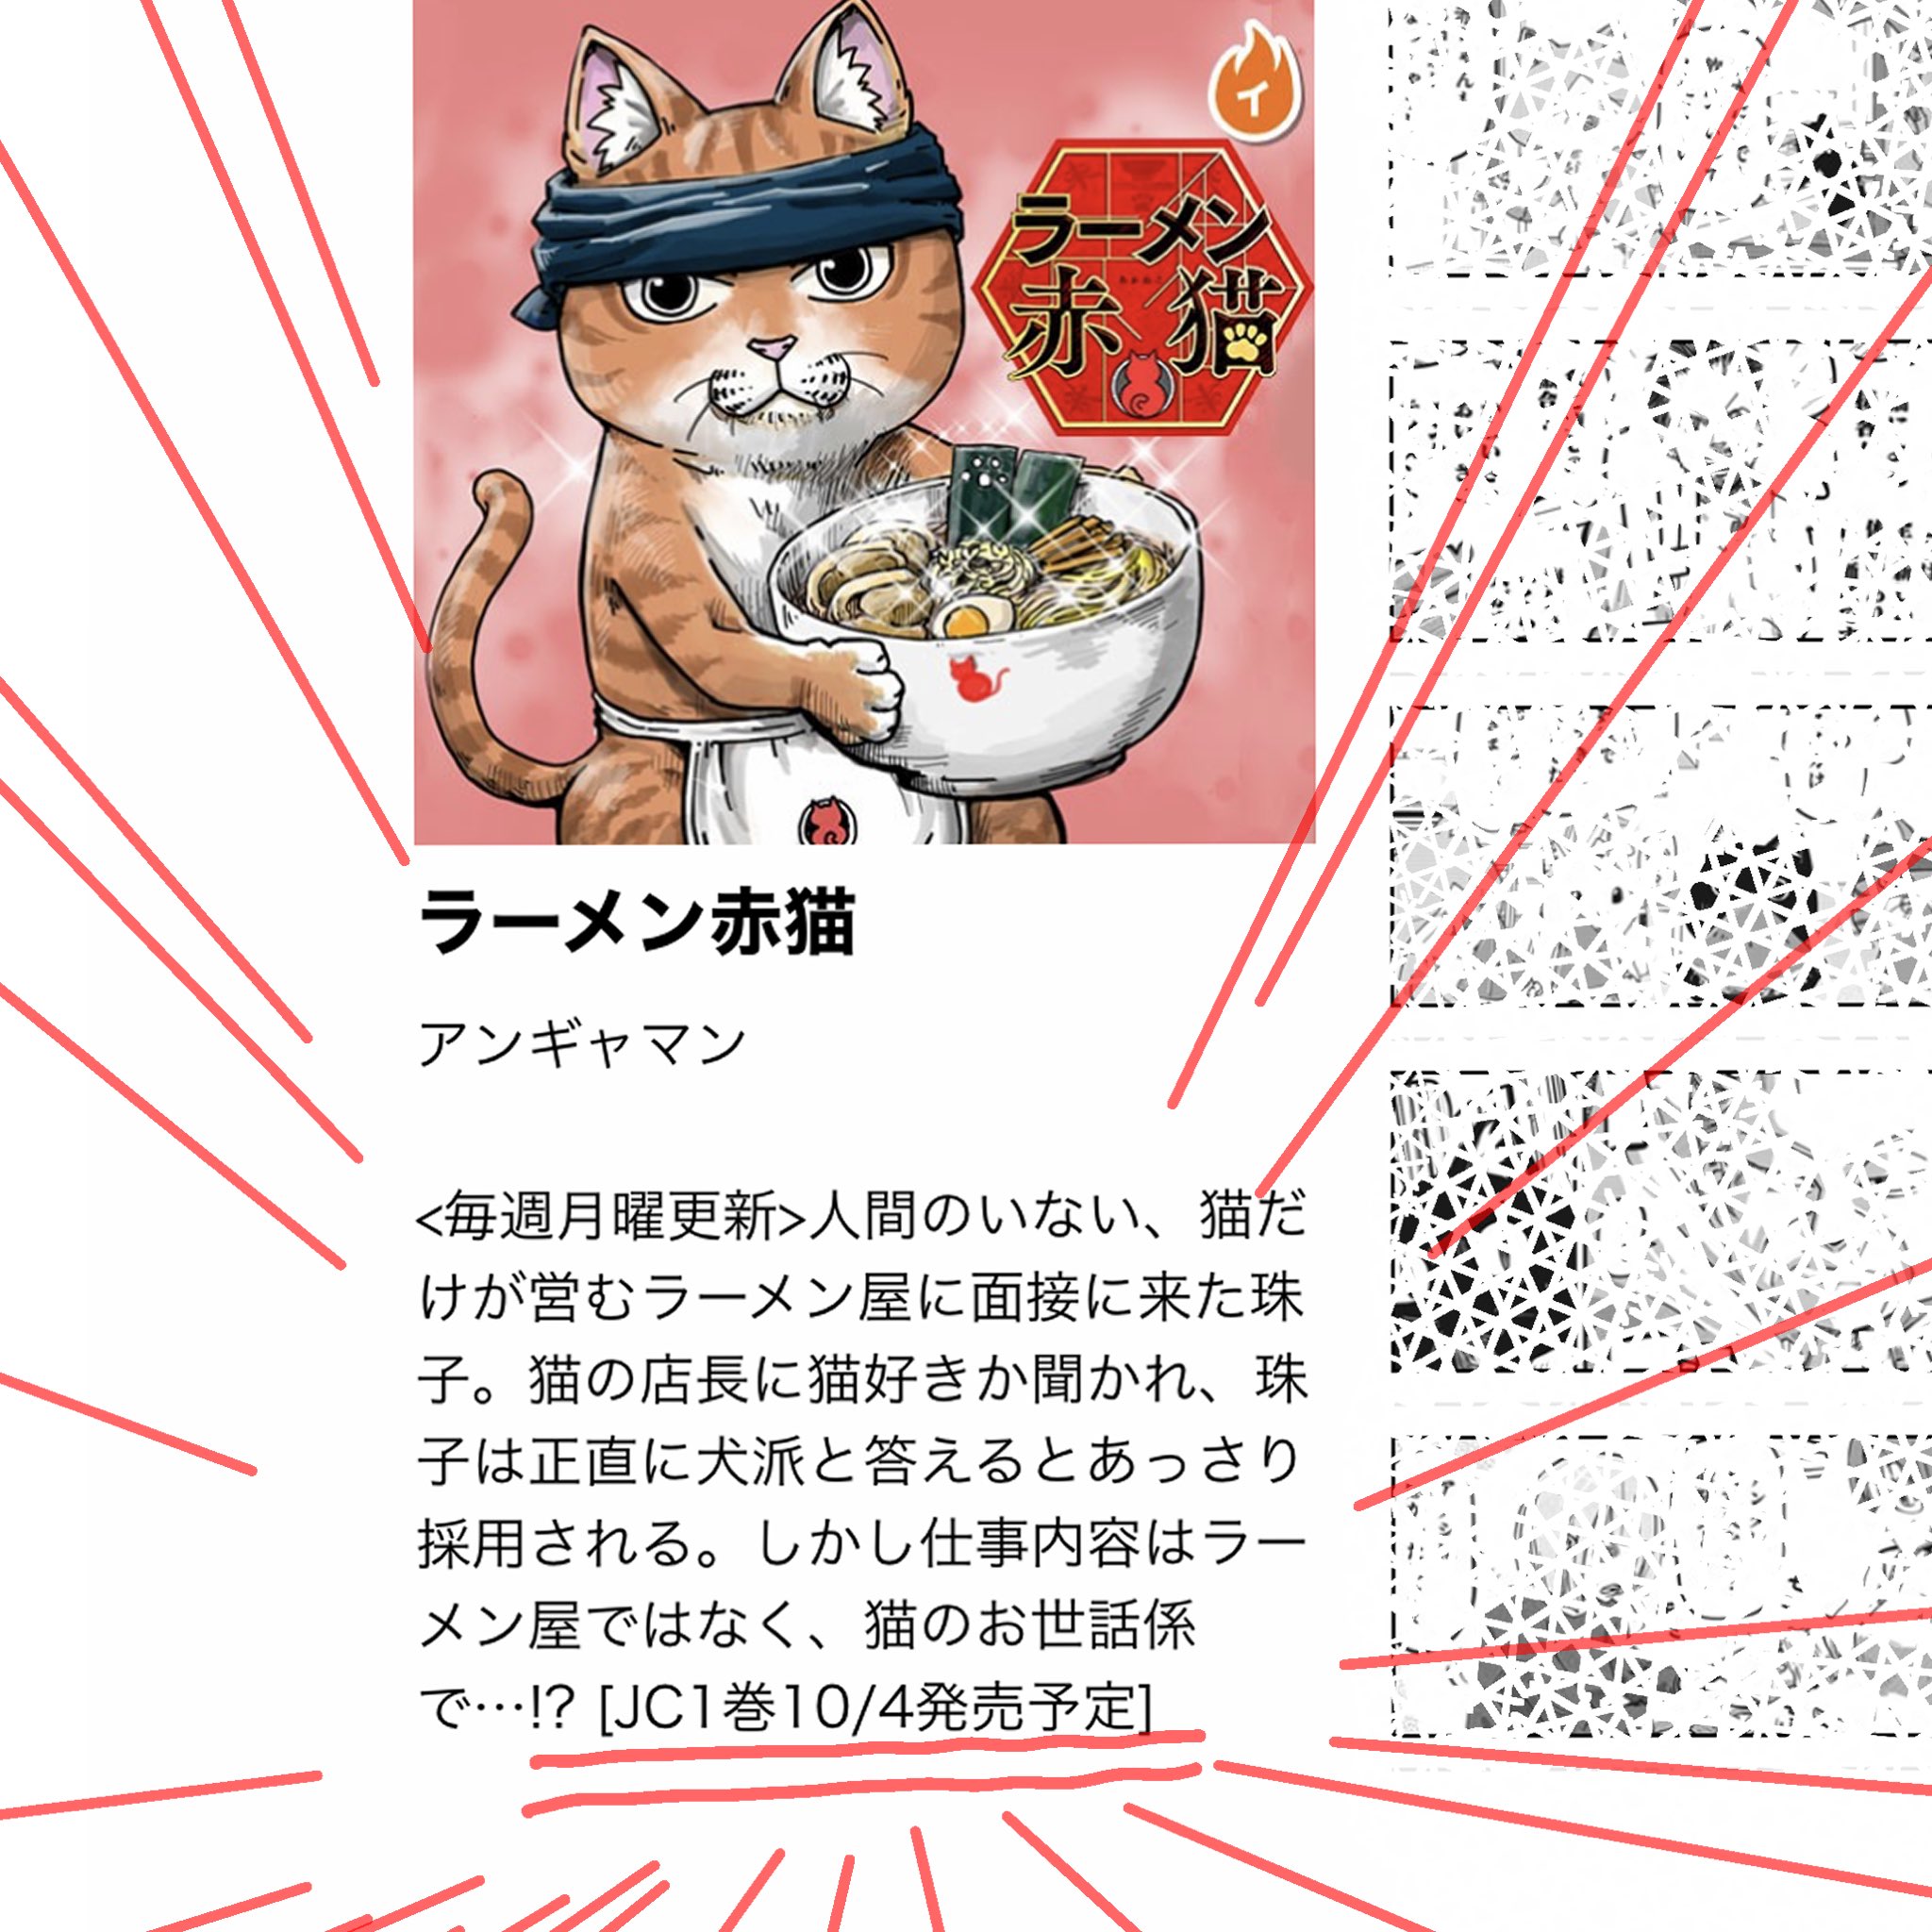 猫が営むラーメン屋さんマンガ ラーメン赤猫 単行本化決定 10月4日発売 Game Watch